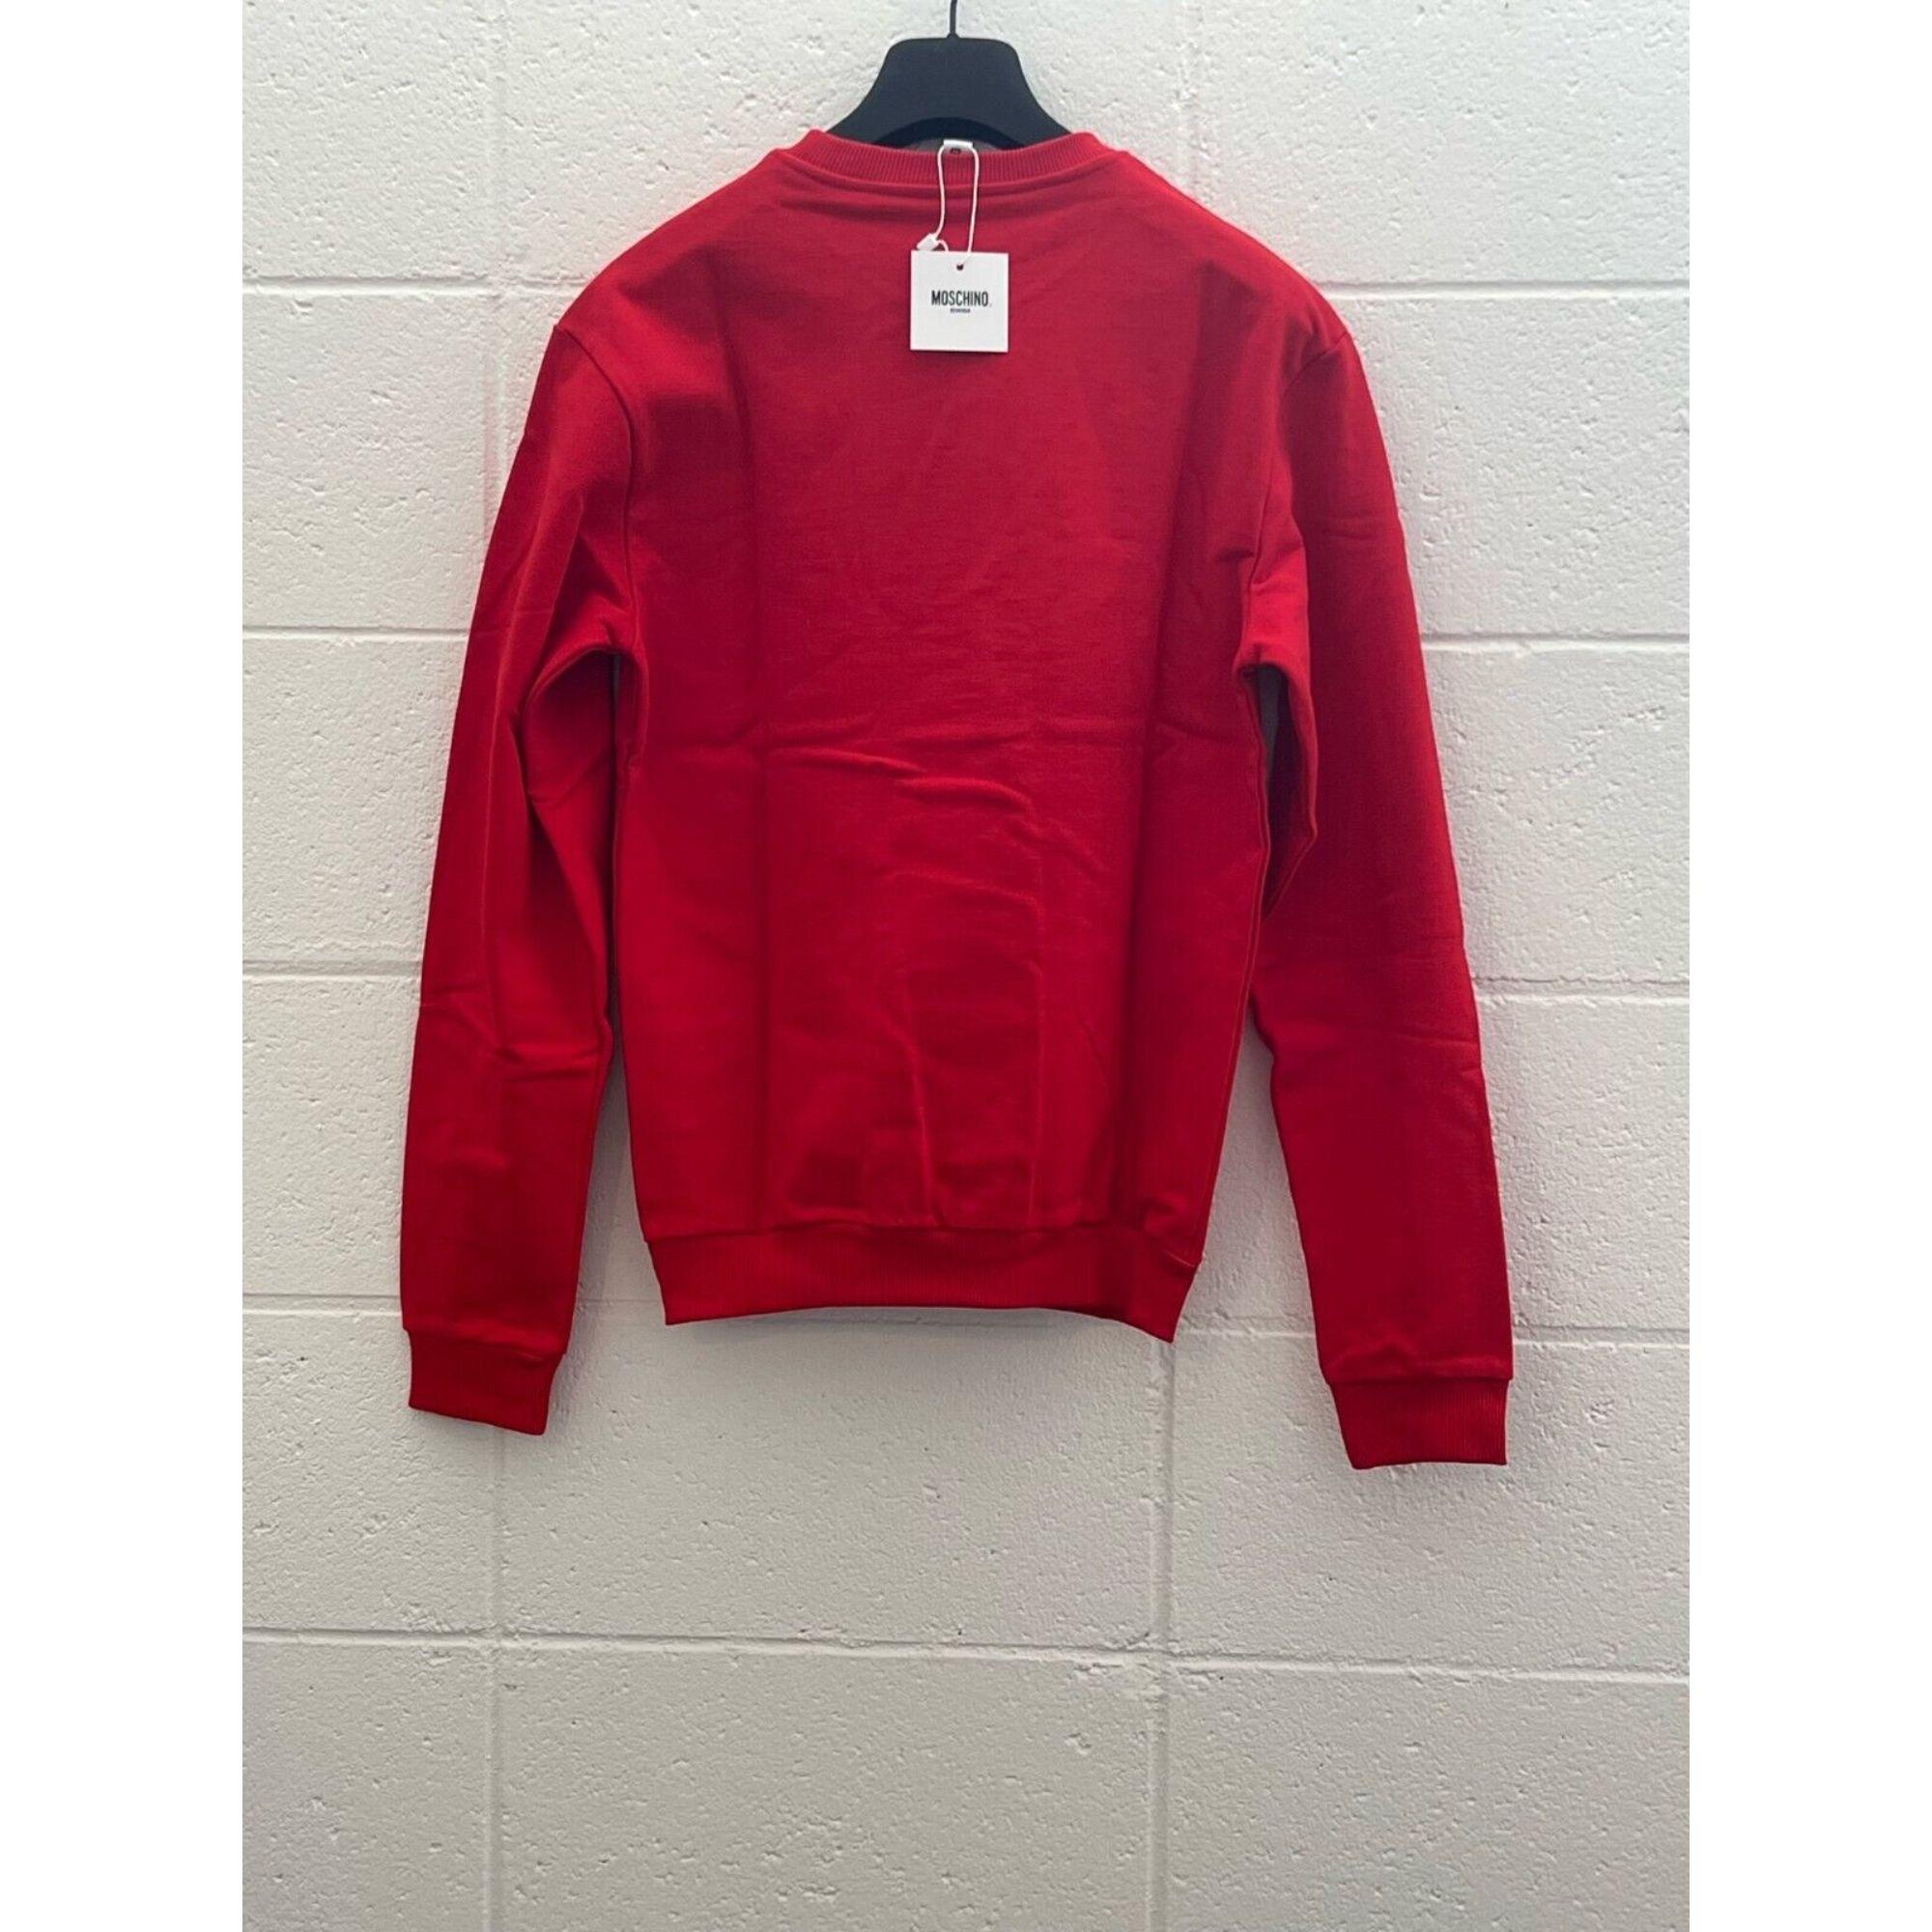 Red SS19 Moschino Swim Jelly Gummy Teddy Bear Sweatshirt by Jeremy Scott, Size M For Sale